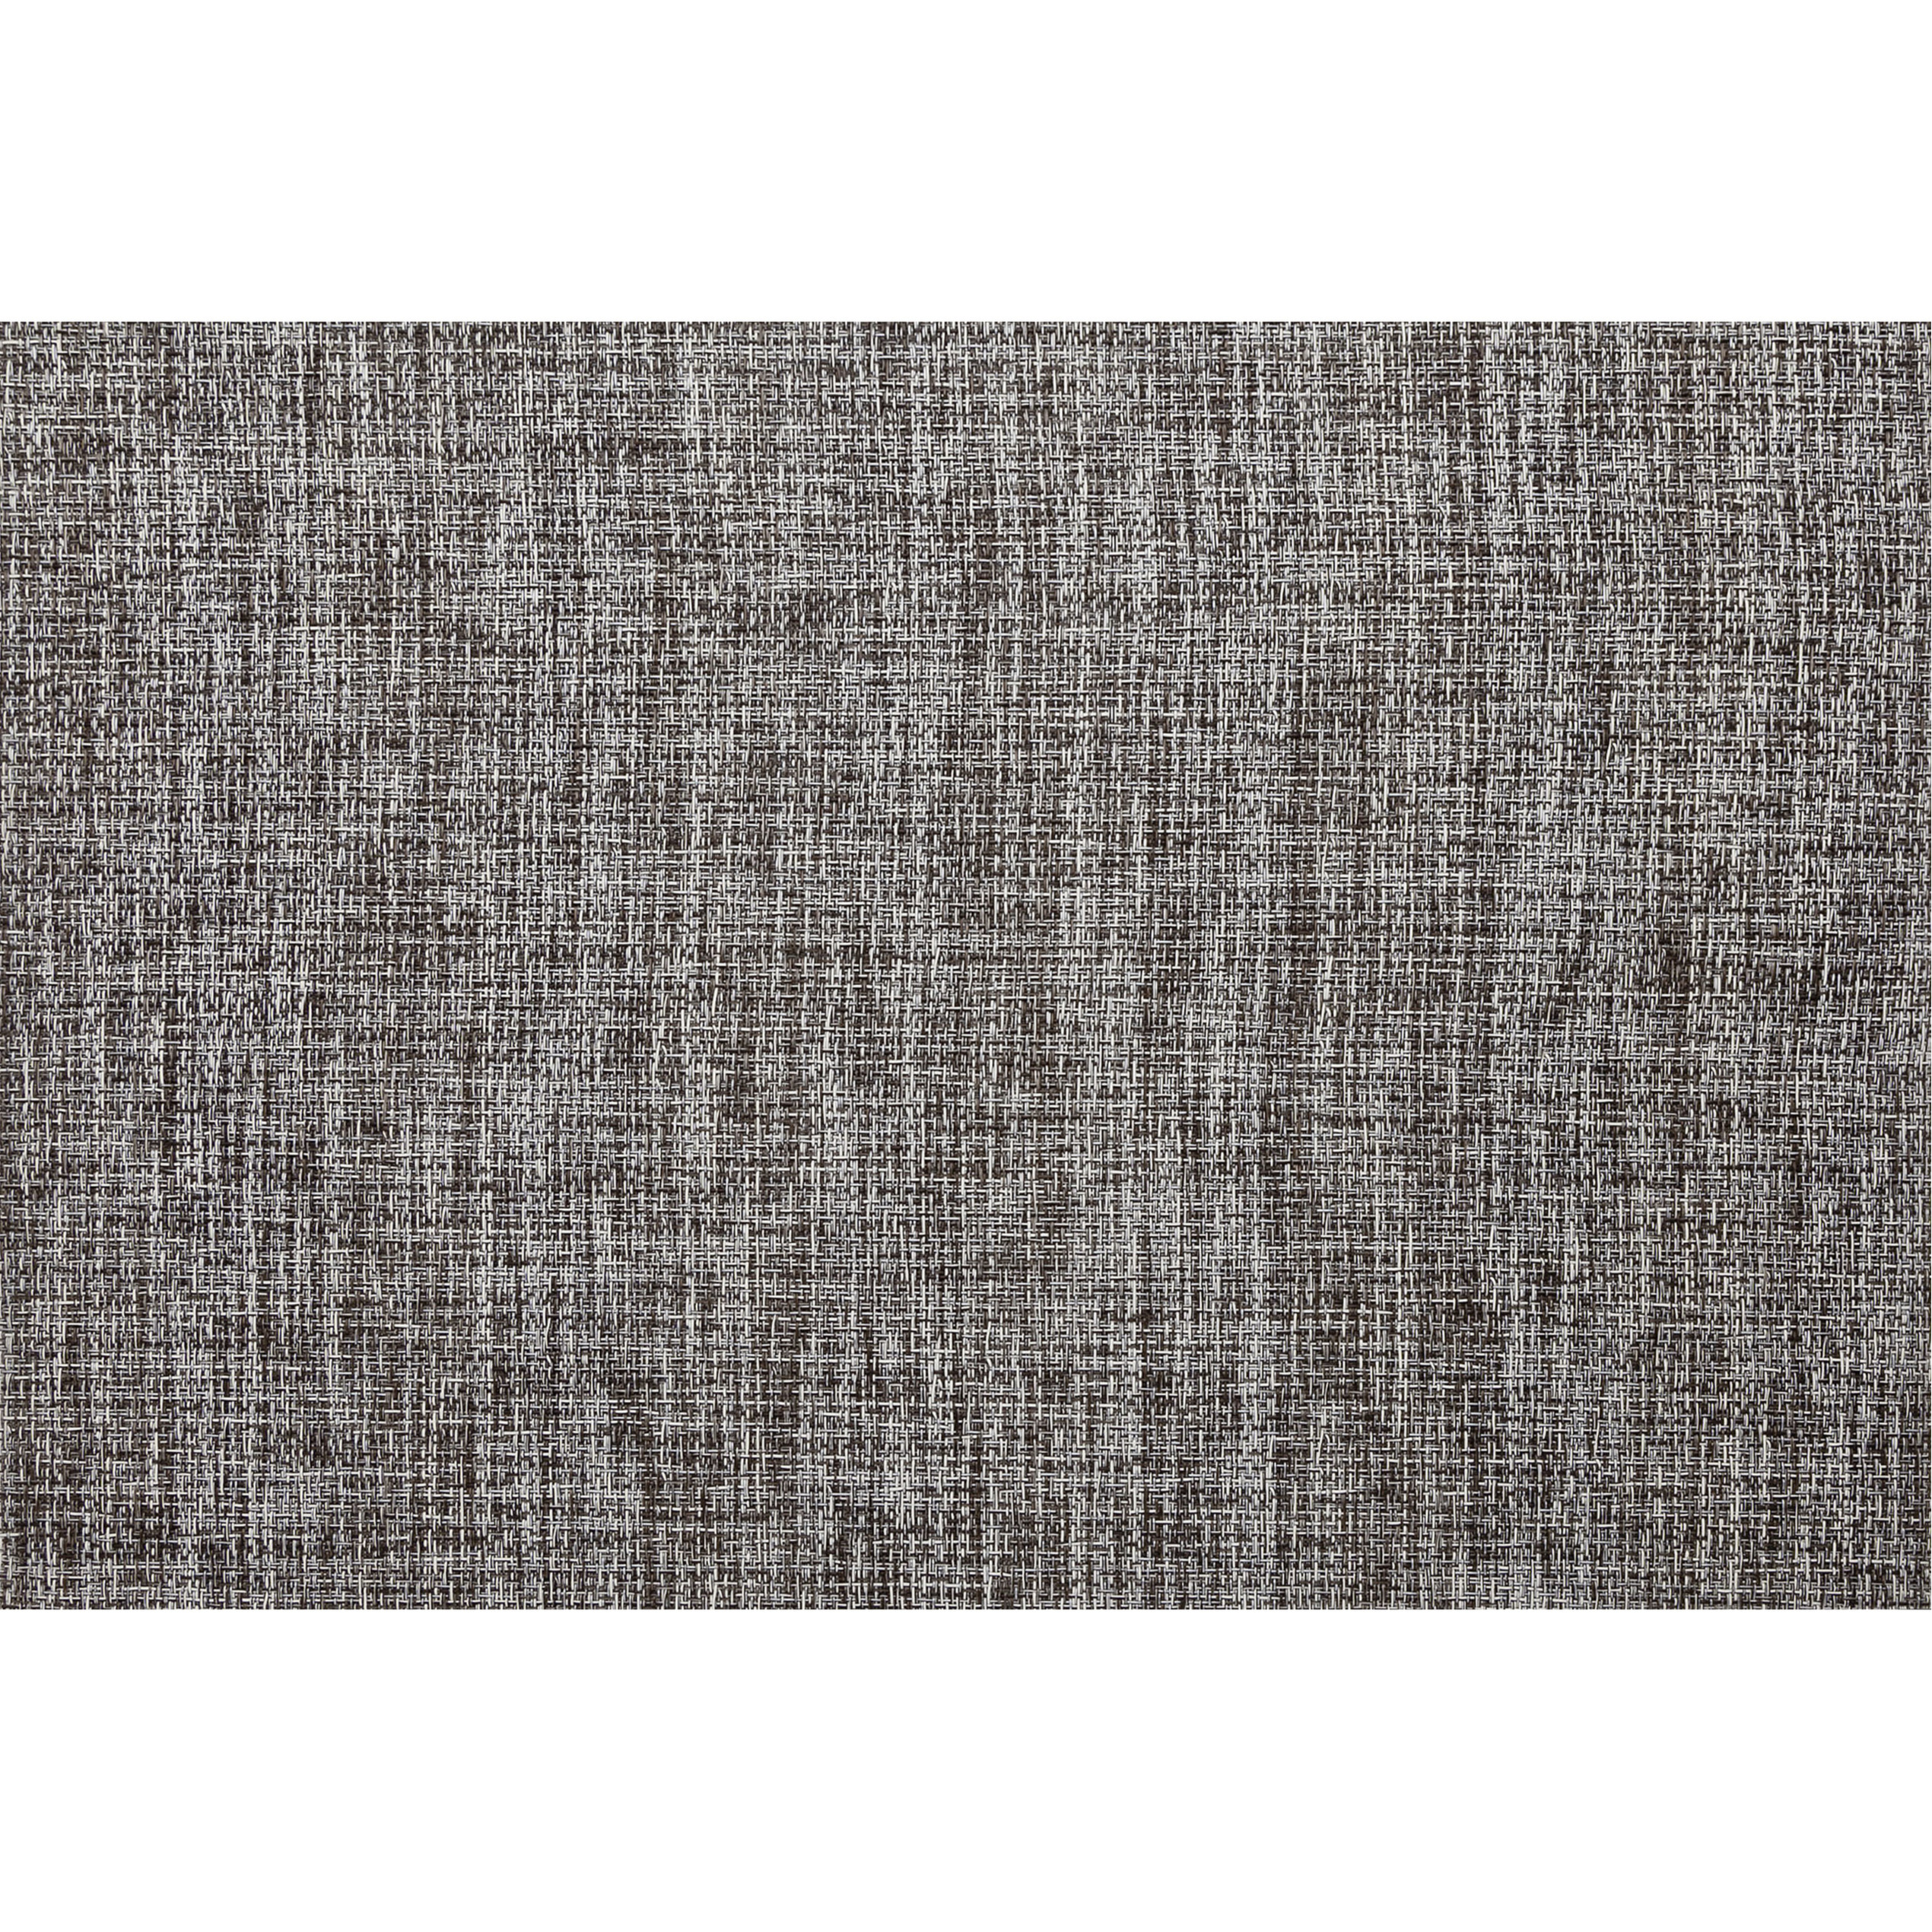 Cosy & Trendy 2x Rechthoekige placemats geweven wit/bruin 30 x 45 cm -